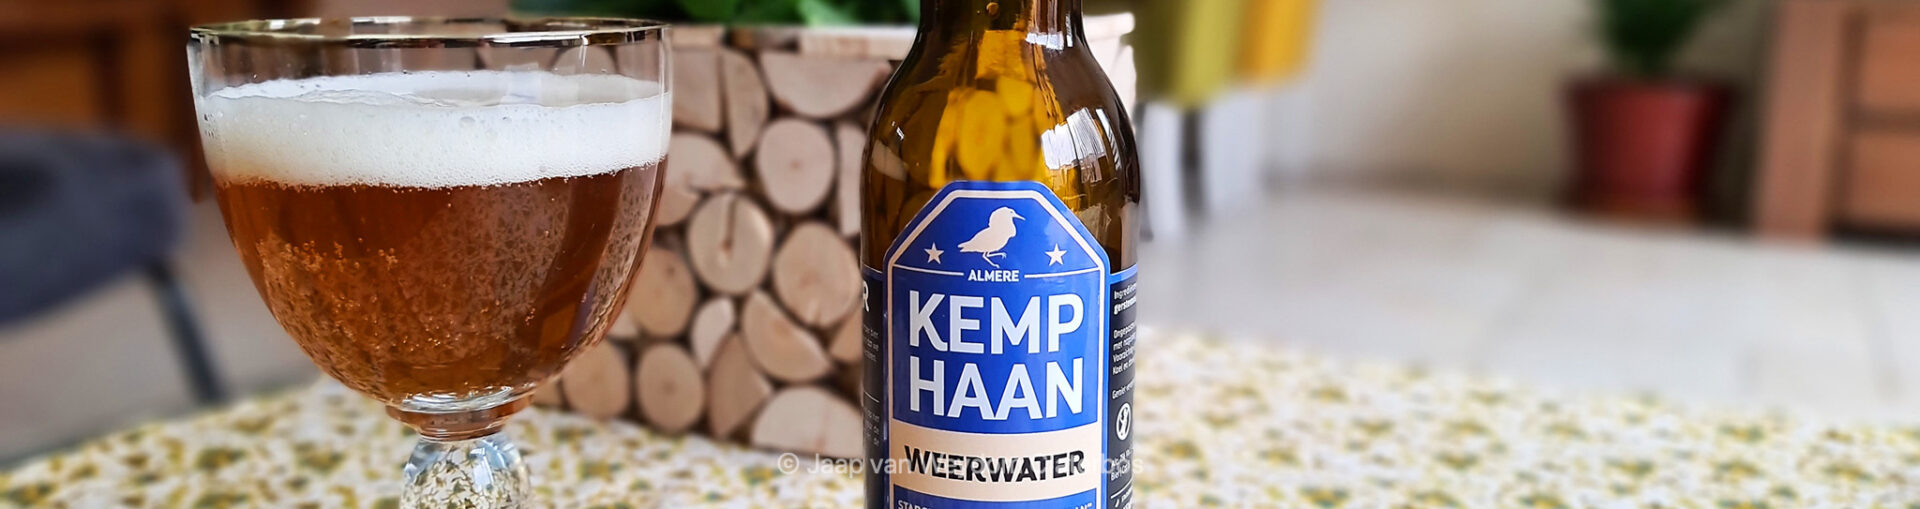 Stadsbrouwerij "De Kemphaan", Weerwater